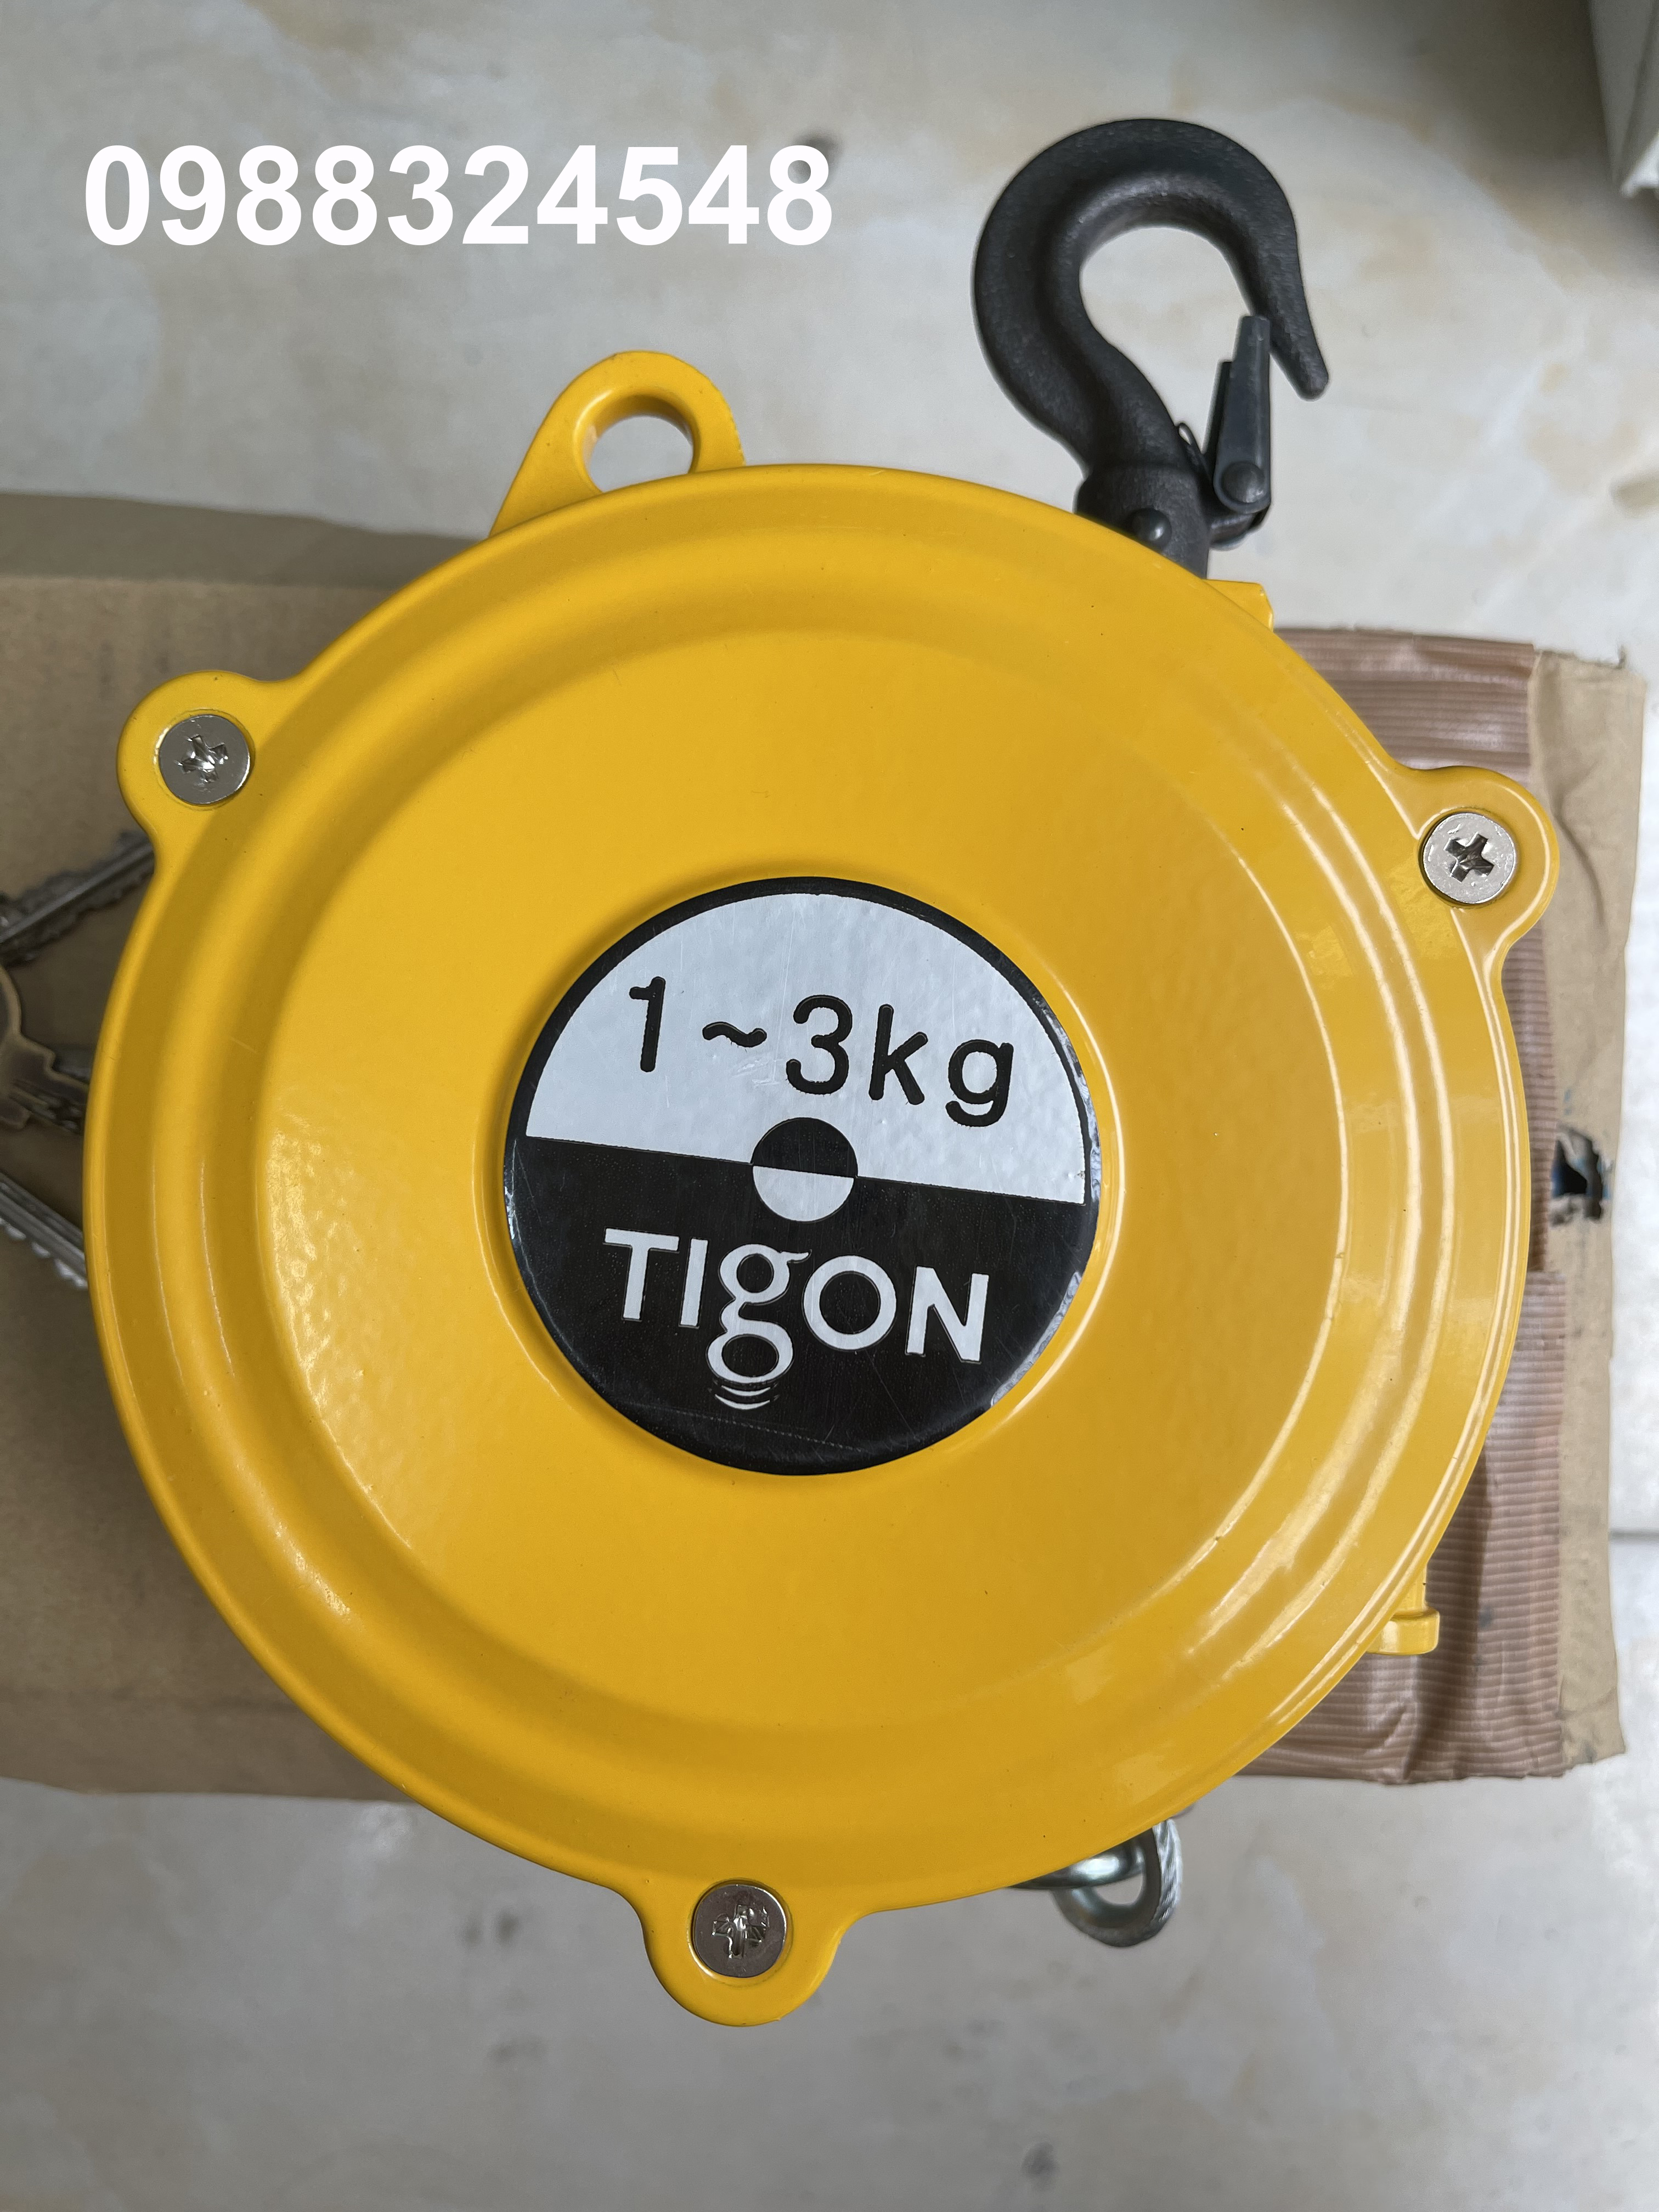 Pa lăng cân bằng Tigon TW-3